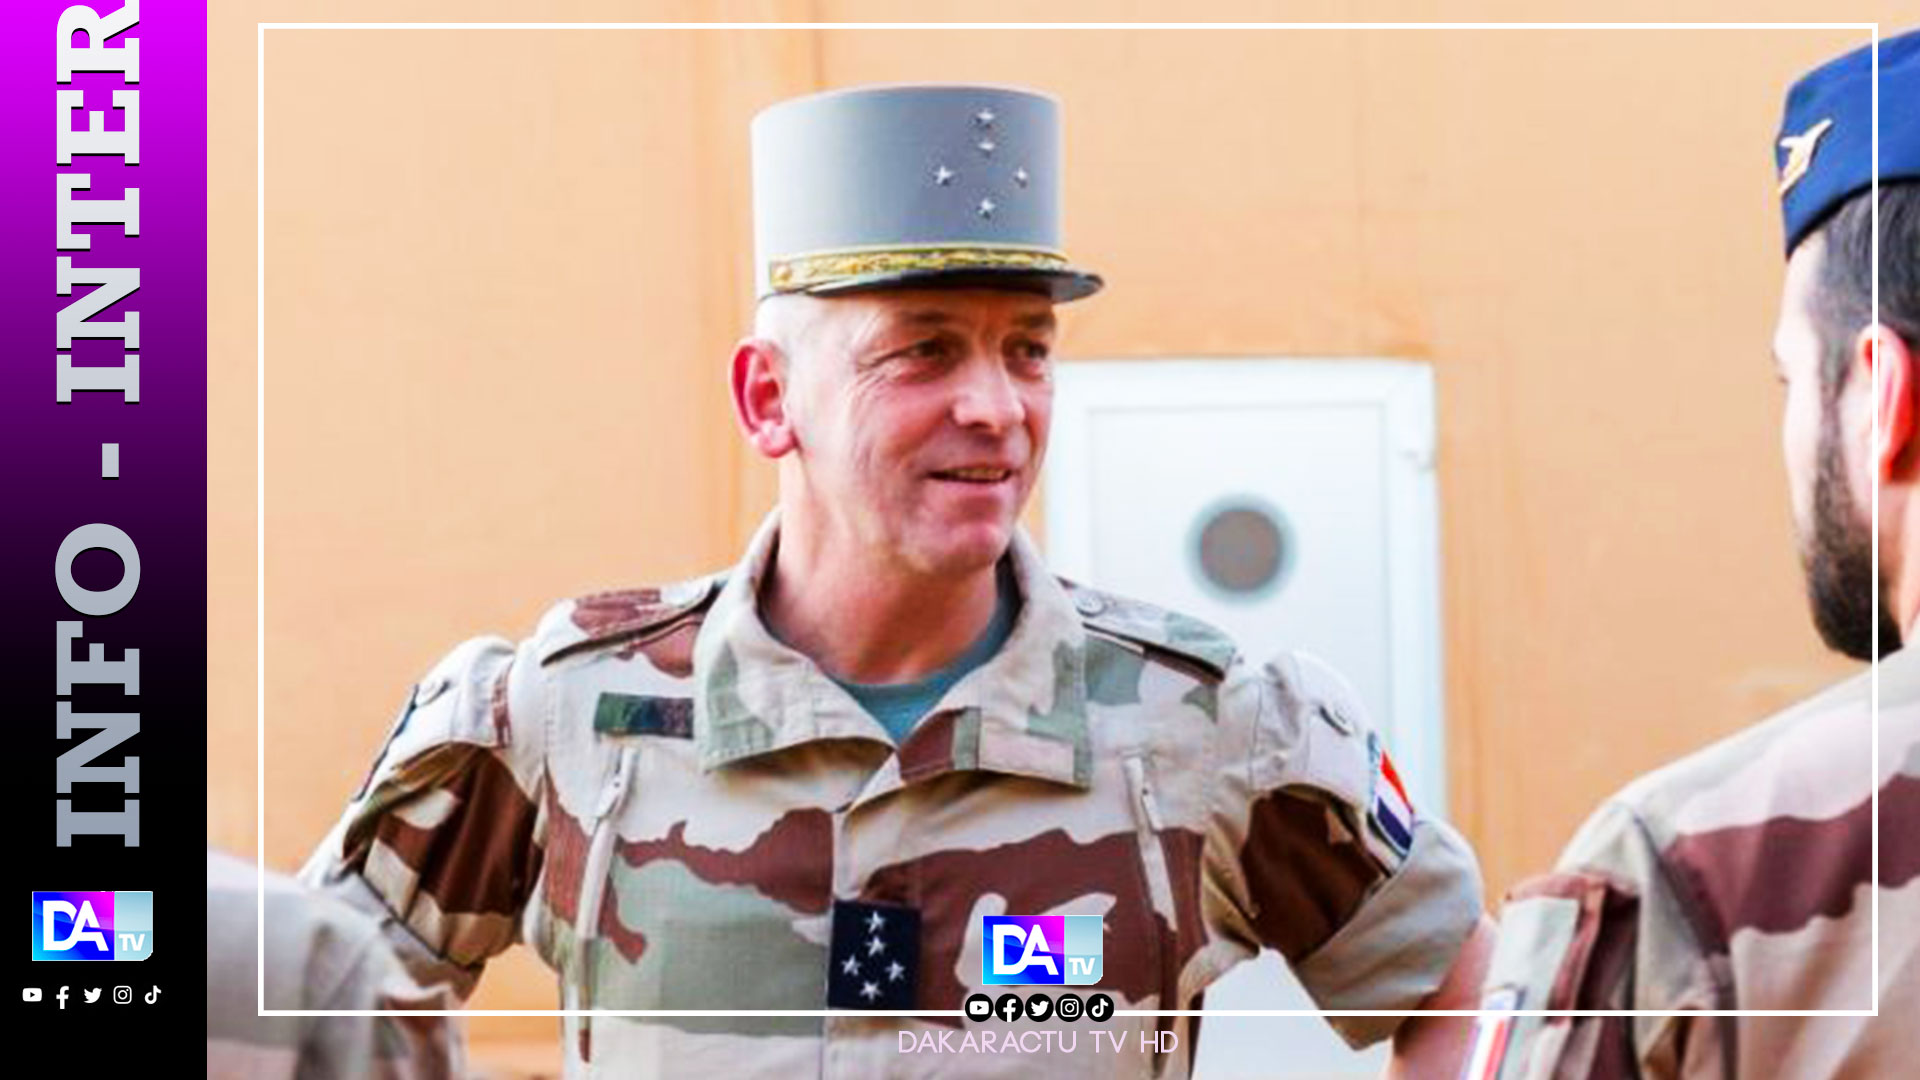 Intervention militaire au Sahel / « La France et l’Europe pour la défense de leurs intérêts communs en Afrique… », Général Lecointre, ex chef d’Etat-major des armées françaises